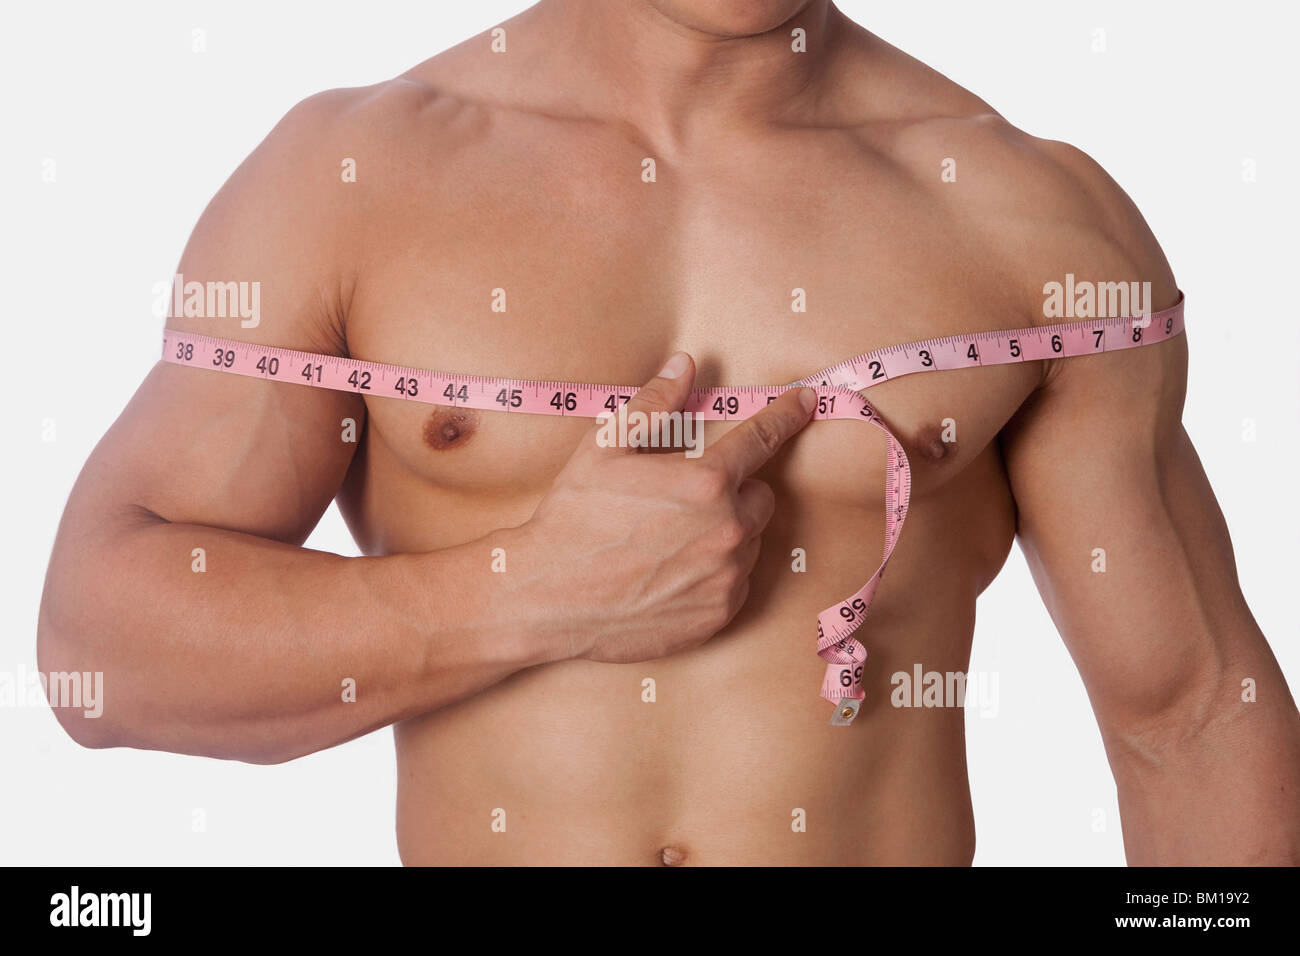 норма объема груди у мужчин фото 15